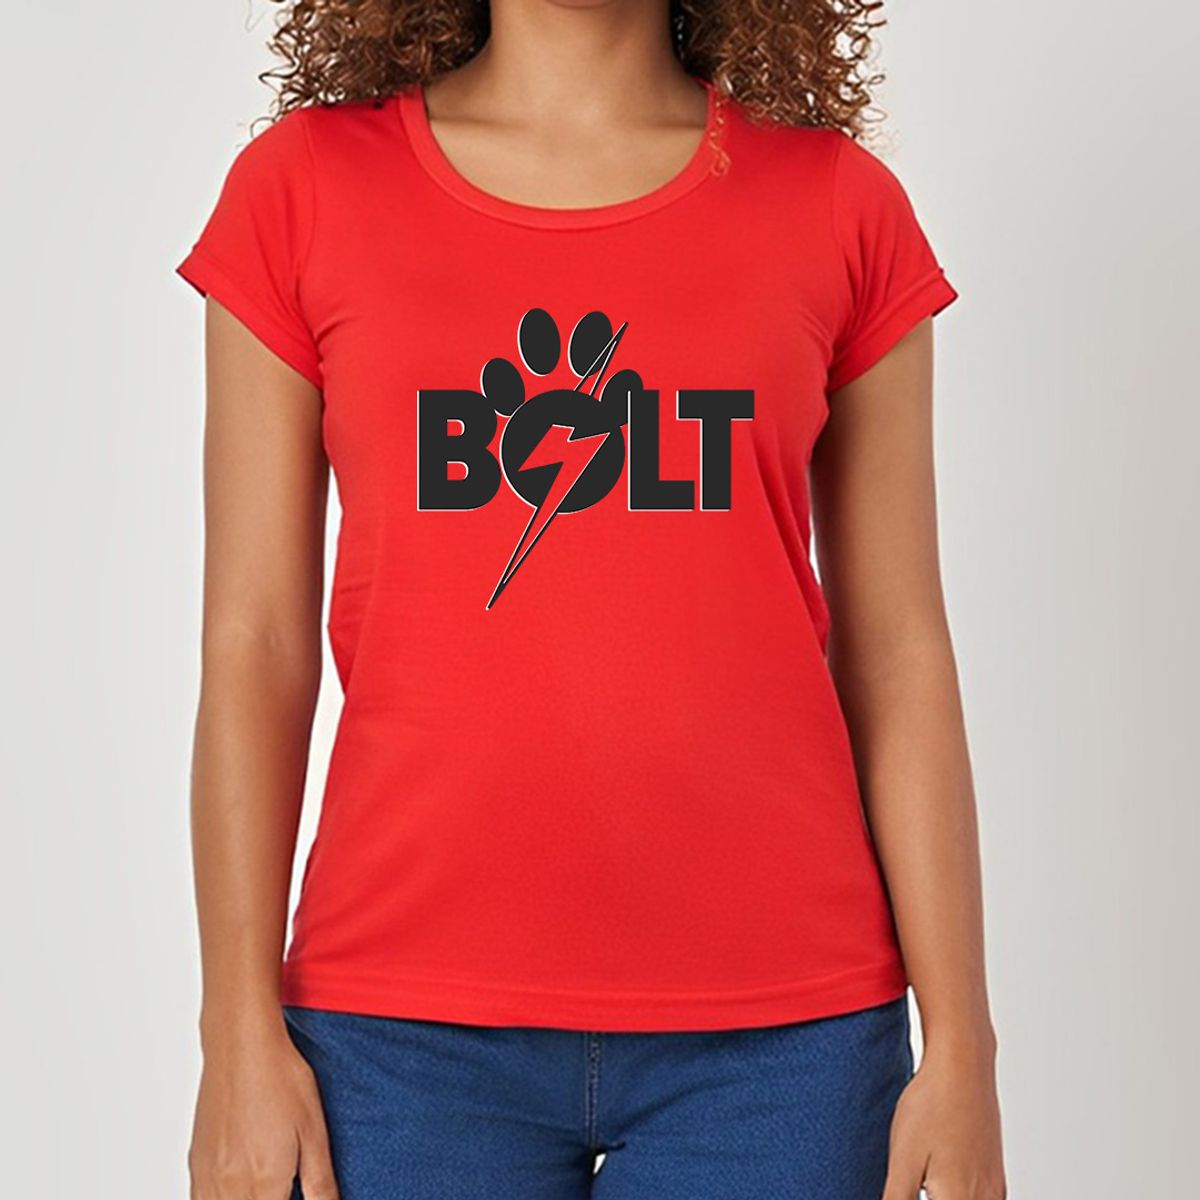 Nome do produto: Bolt Super cão - Camiseta Feminina